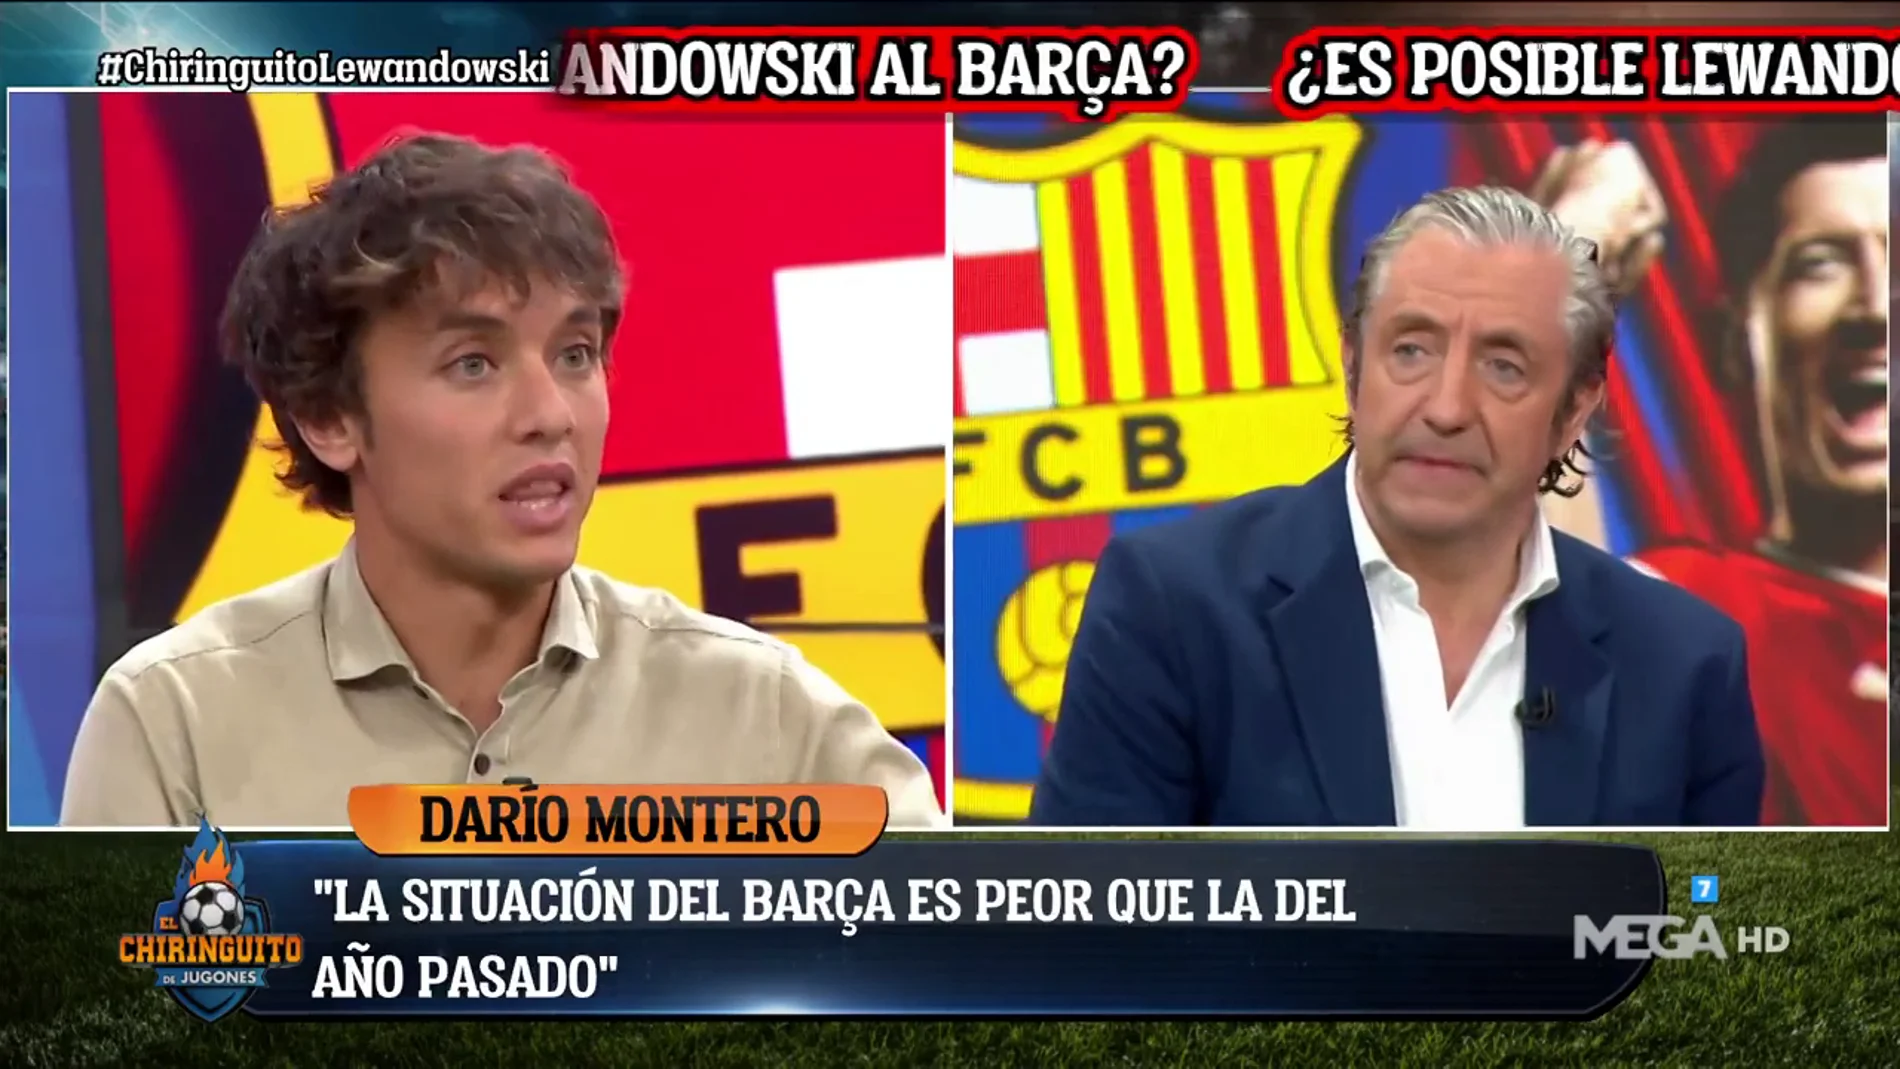 Darío Montero: "Ahora mismo es imposible el fichaje de Lewandowski"